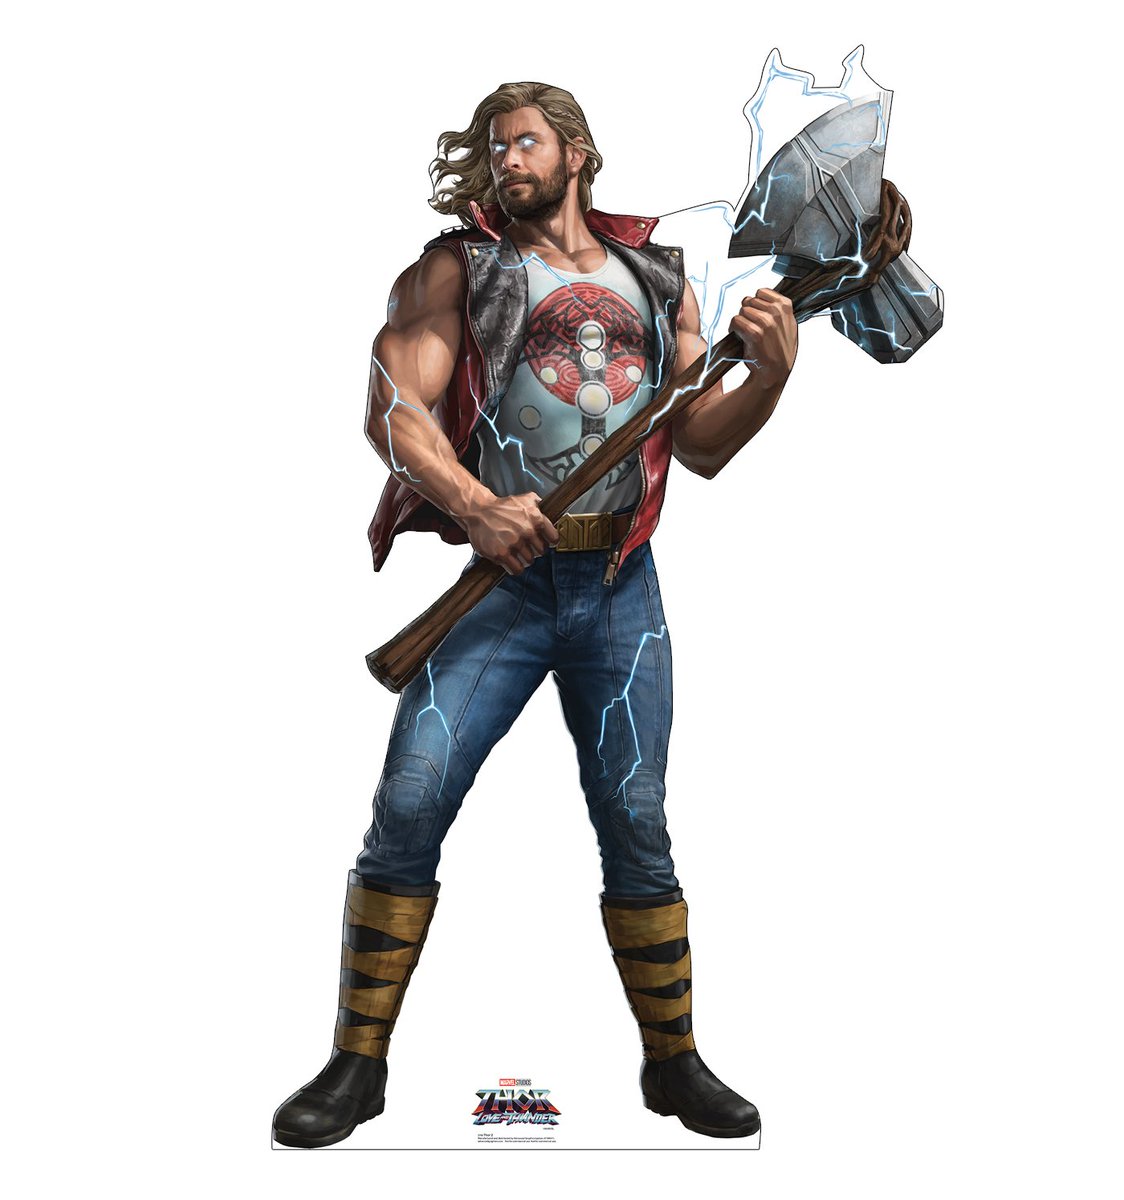 RT @nacaomarveI: Arte promocional do Thor Ravager em #ThorLoveandThunder https://t.co/BdSyLxLQcy